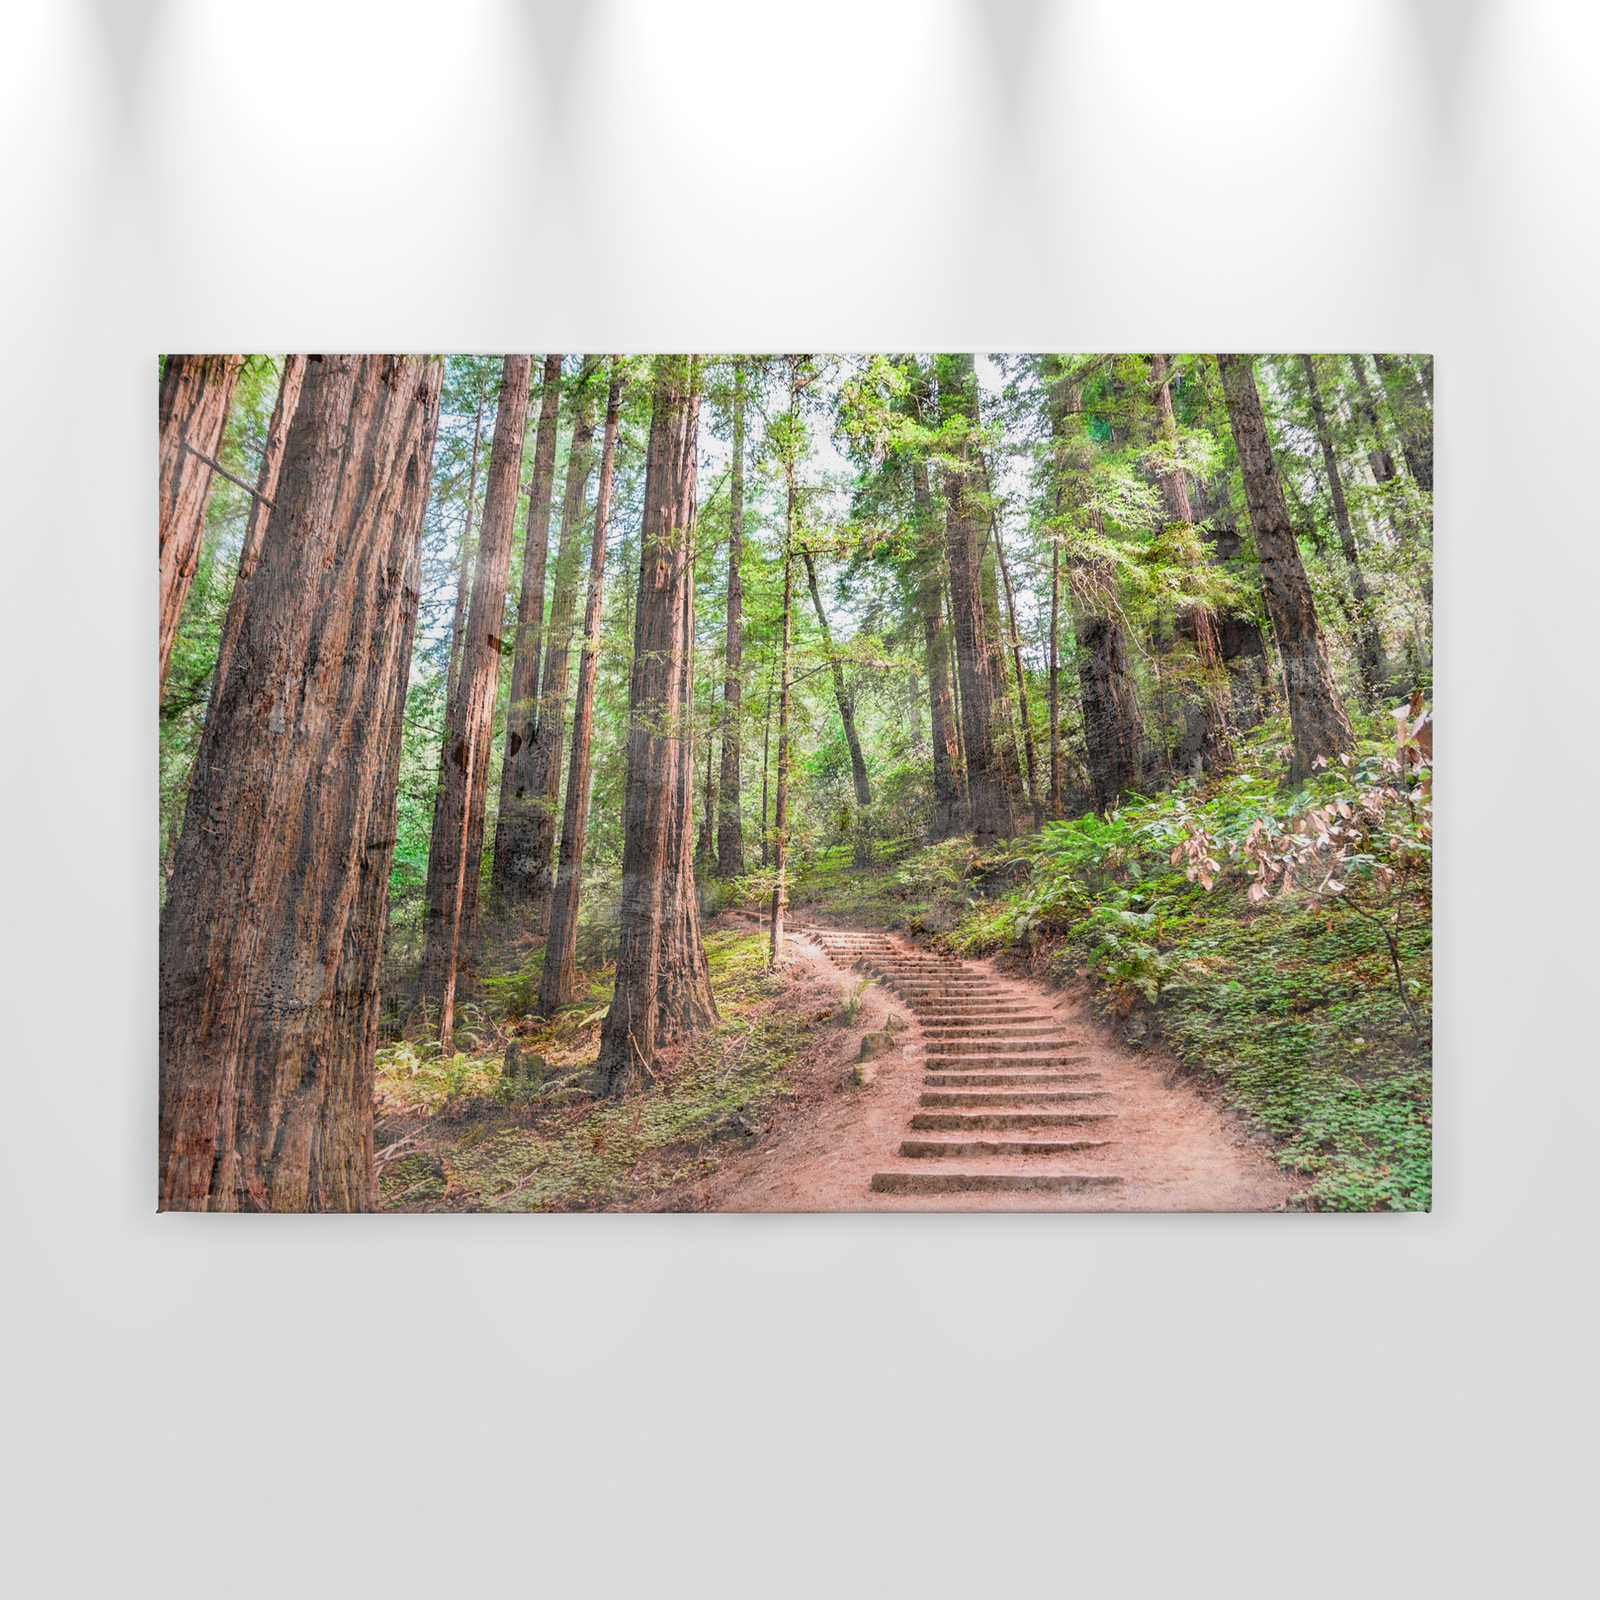             Lienzo con escalera de madera por el bosque | marrón, verde, azul - 0,90 m x 0,60 m
        